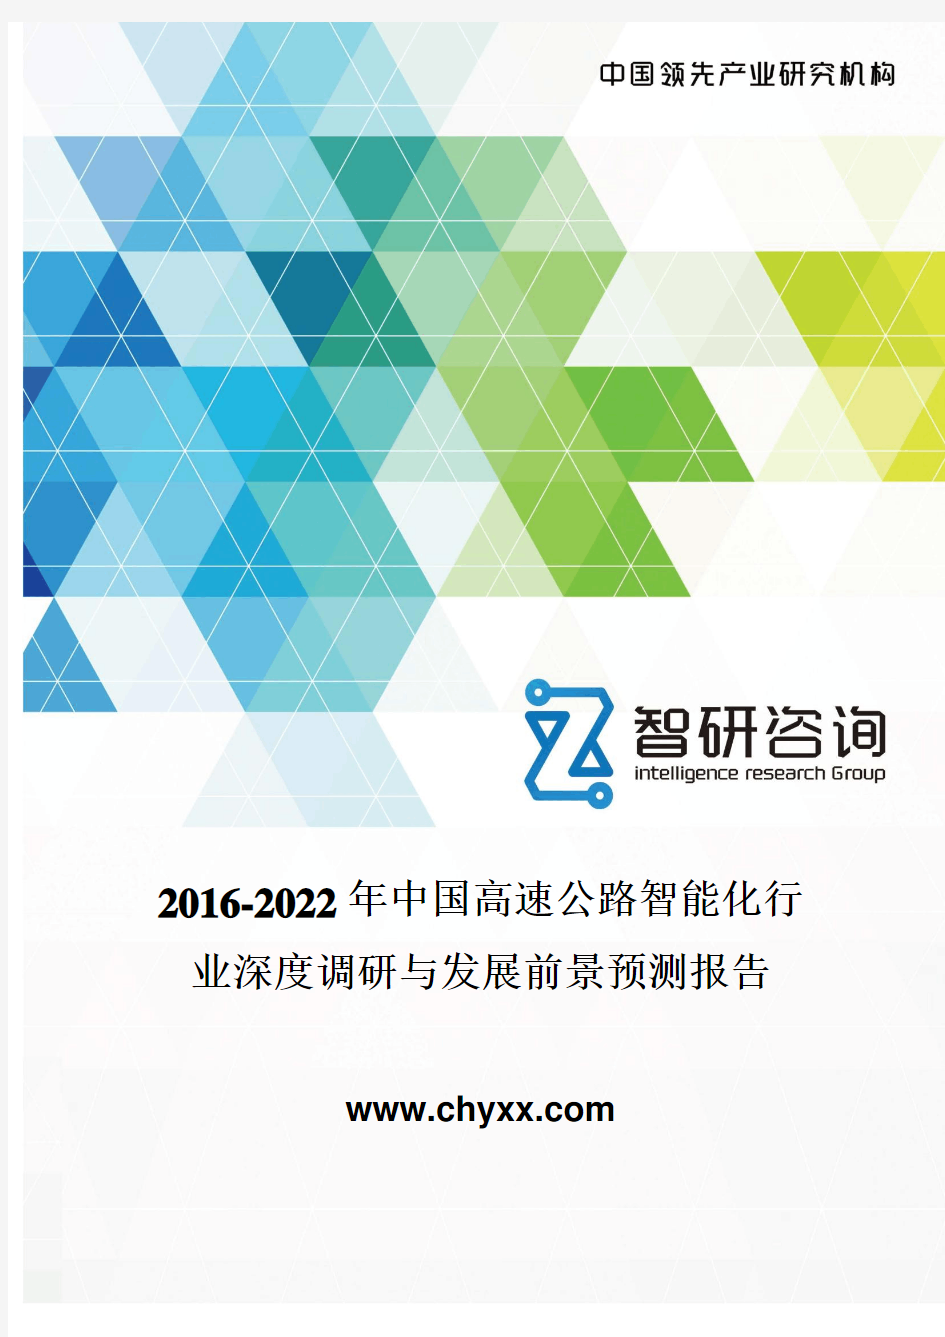 2016-2022年中国高速公路智能化行业深度调研报告